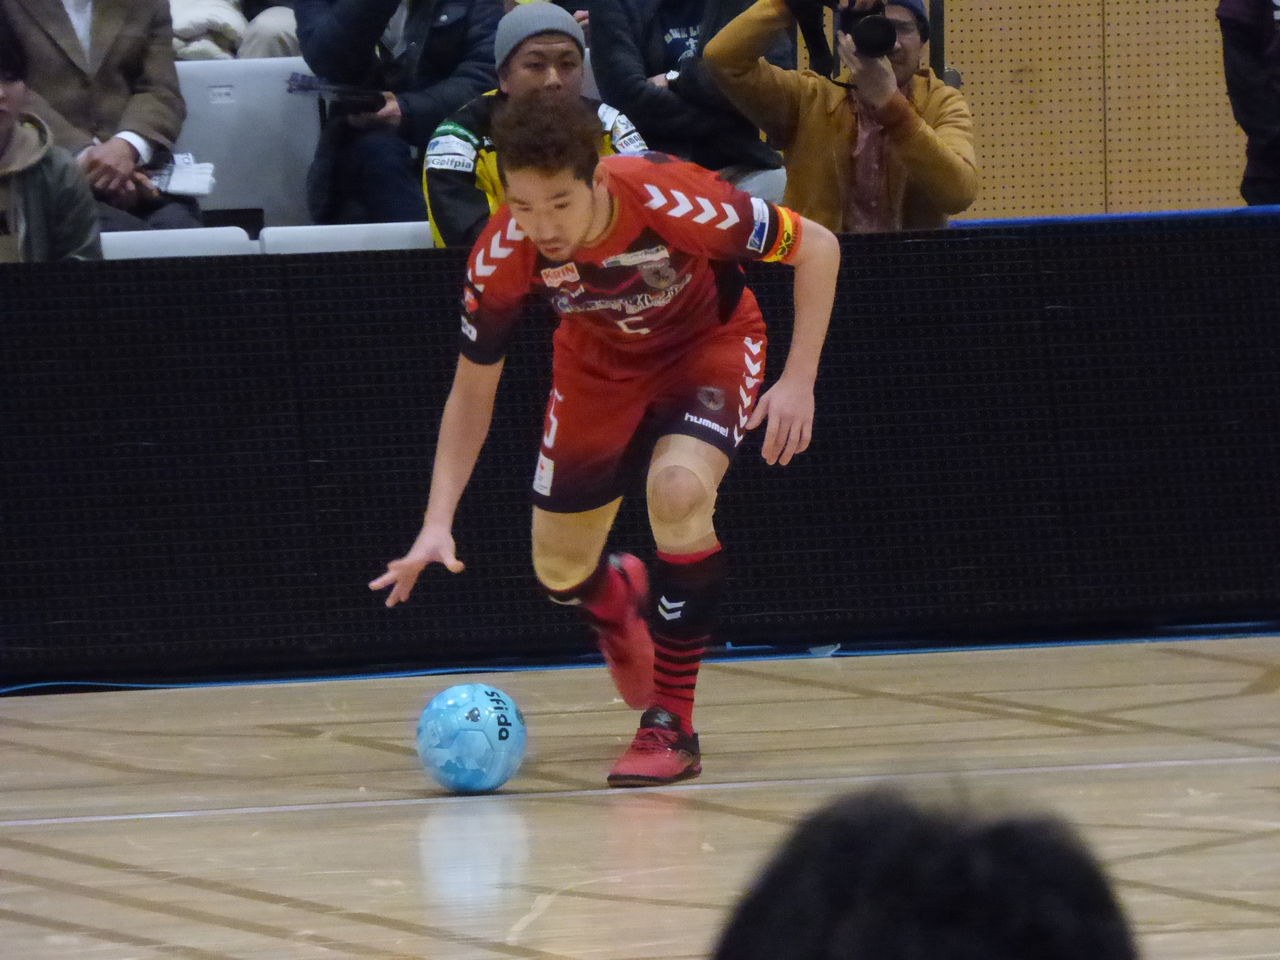 17 2 24 金 25 土 Fリーグプレーオフ1st 2nd Round 墨田区総合体育館 価値を創る Futsal Philosophy フットサル フィロソフィー